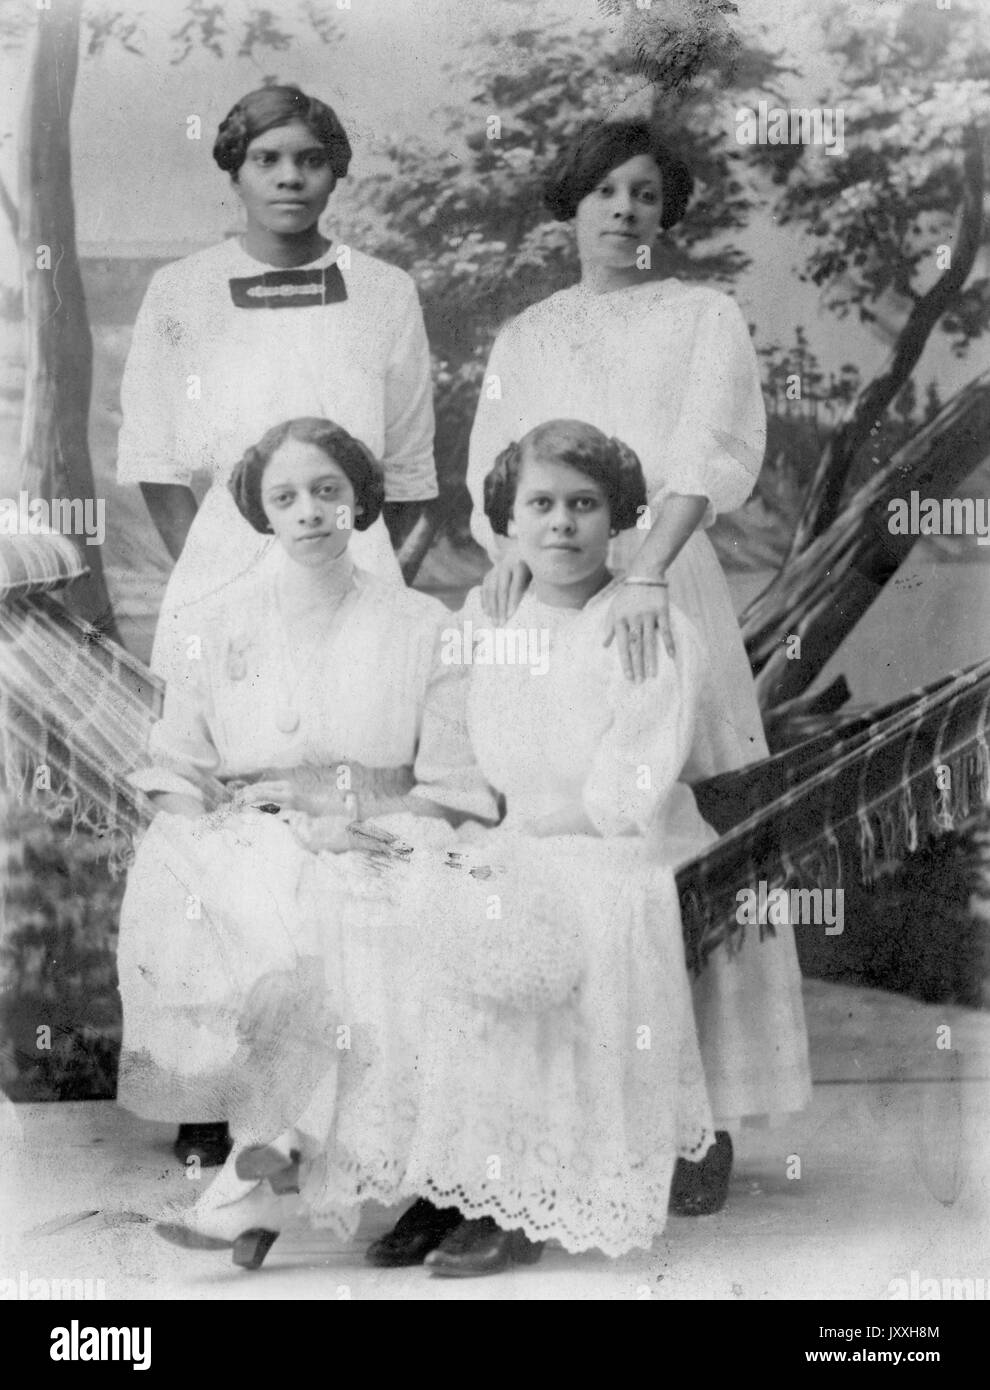 In voller Länge stehend und sitzend Porträts von vier jungen afroamerikanischen Frauen, alle tragen leichte Kleider mit Spitze Detail, zwei sitzen auf Hängematte, sitzen und stehen vor Hintergrund, neutrale Ausdrücke, 1920. Stockfoto